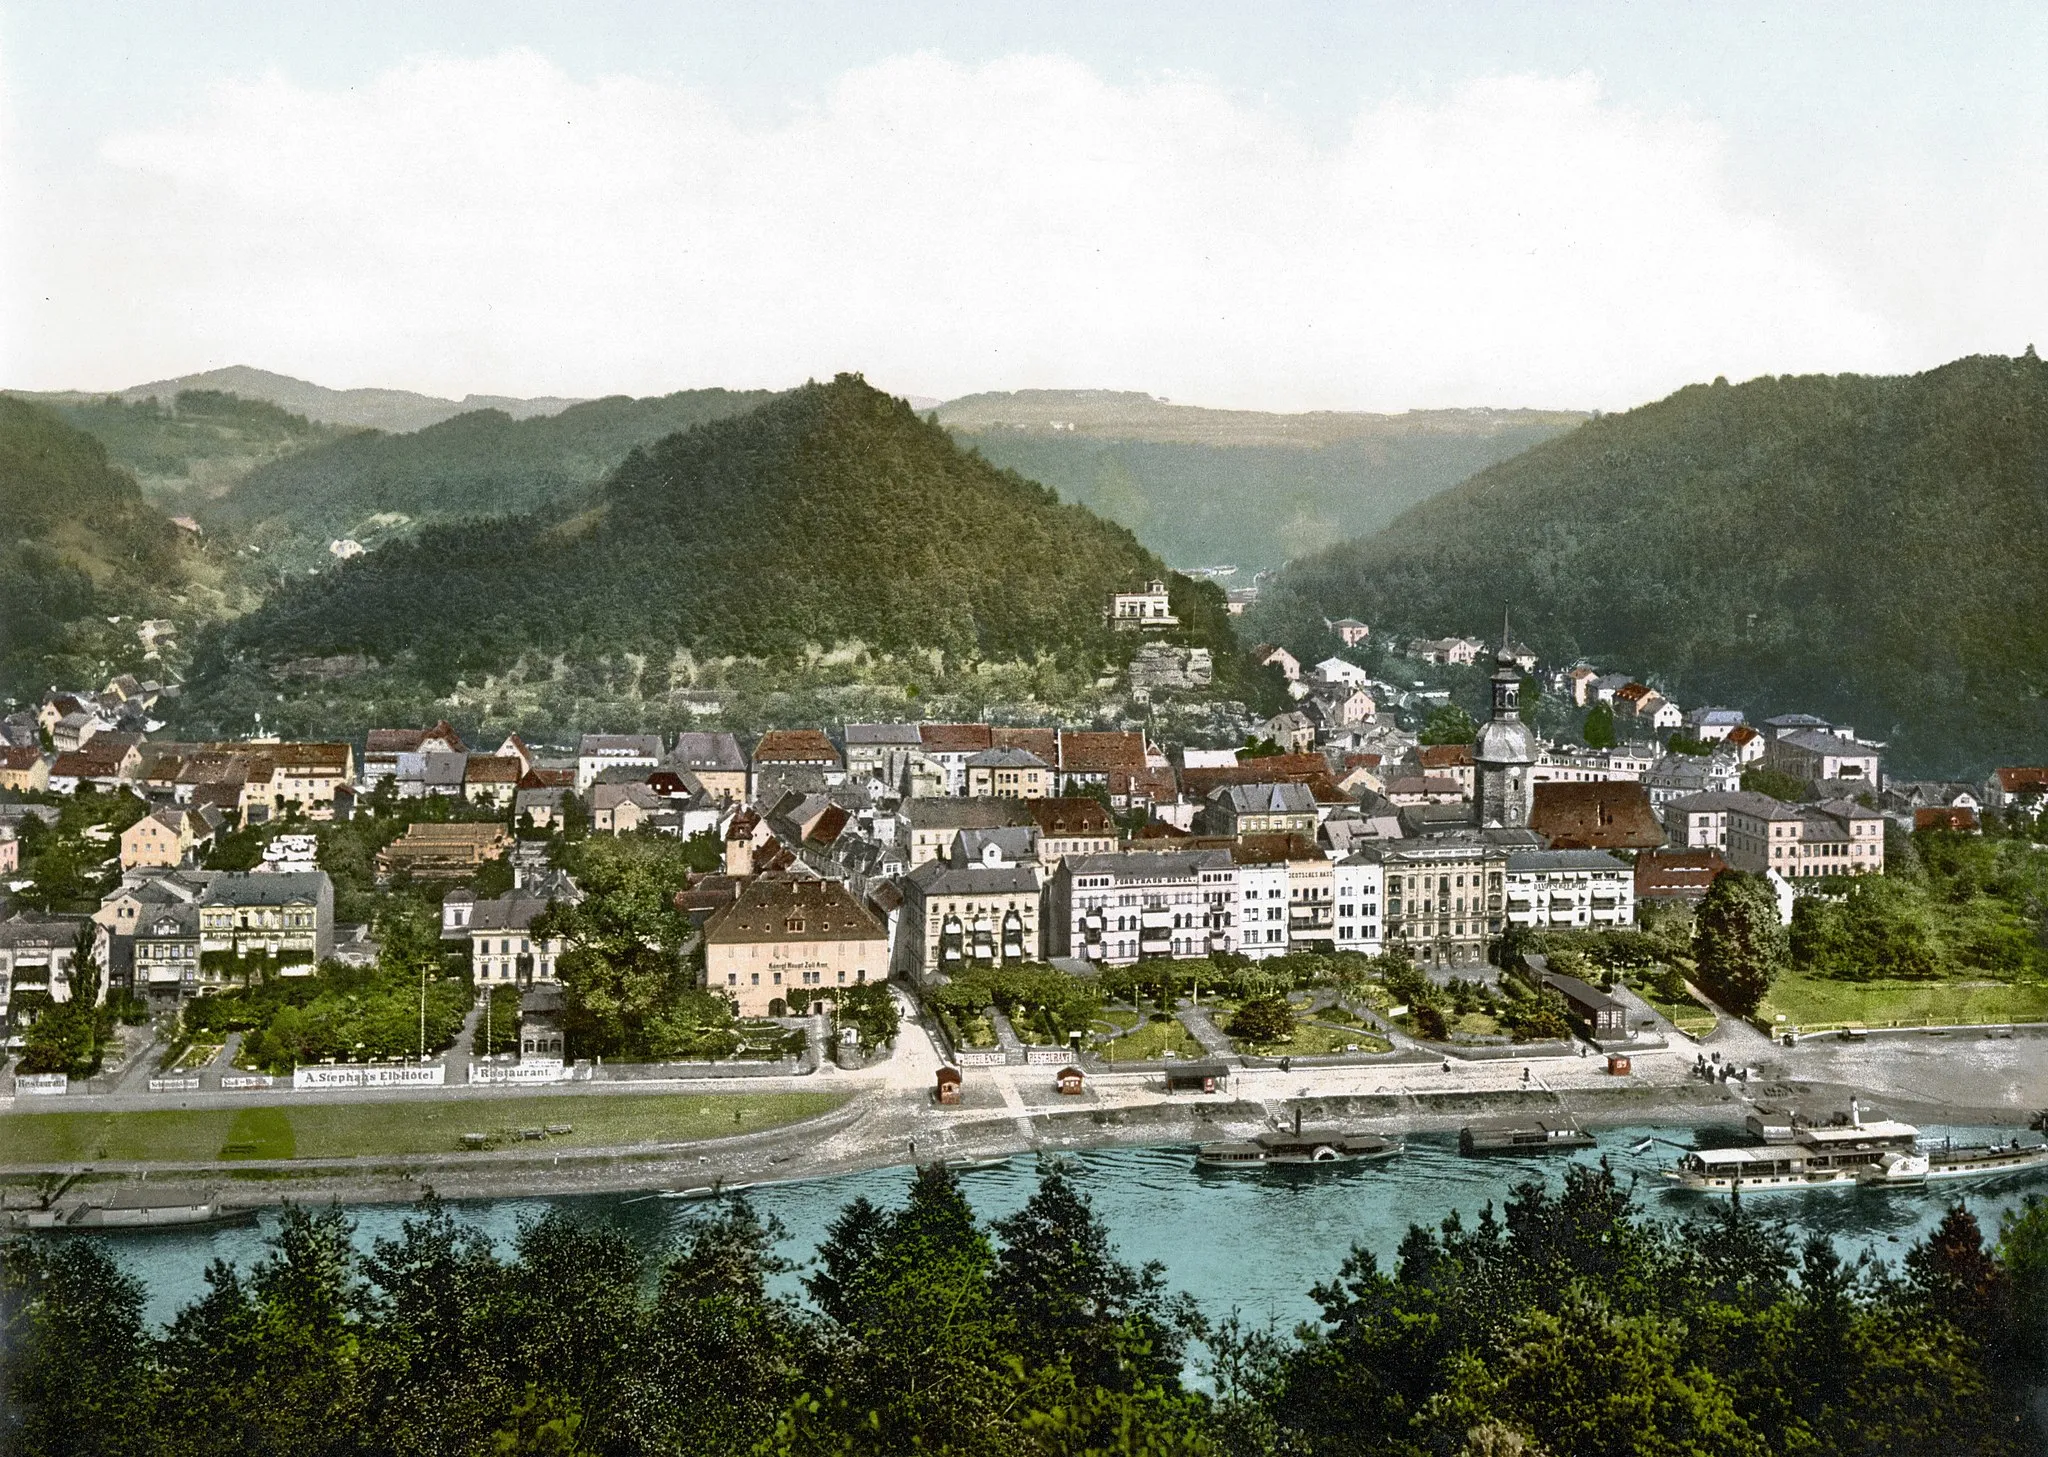 Image of Bad Schandau